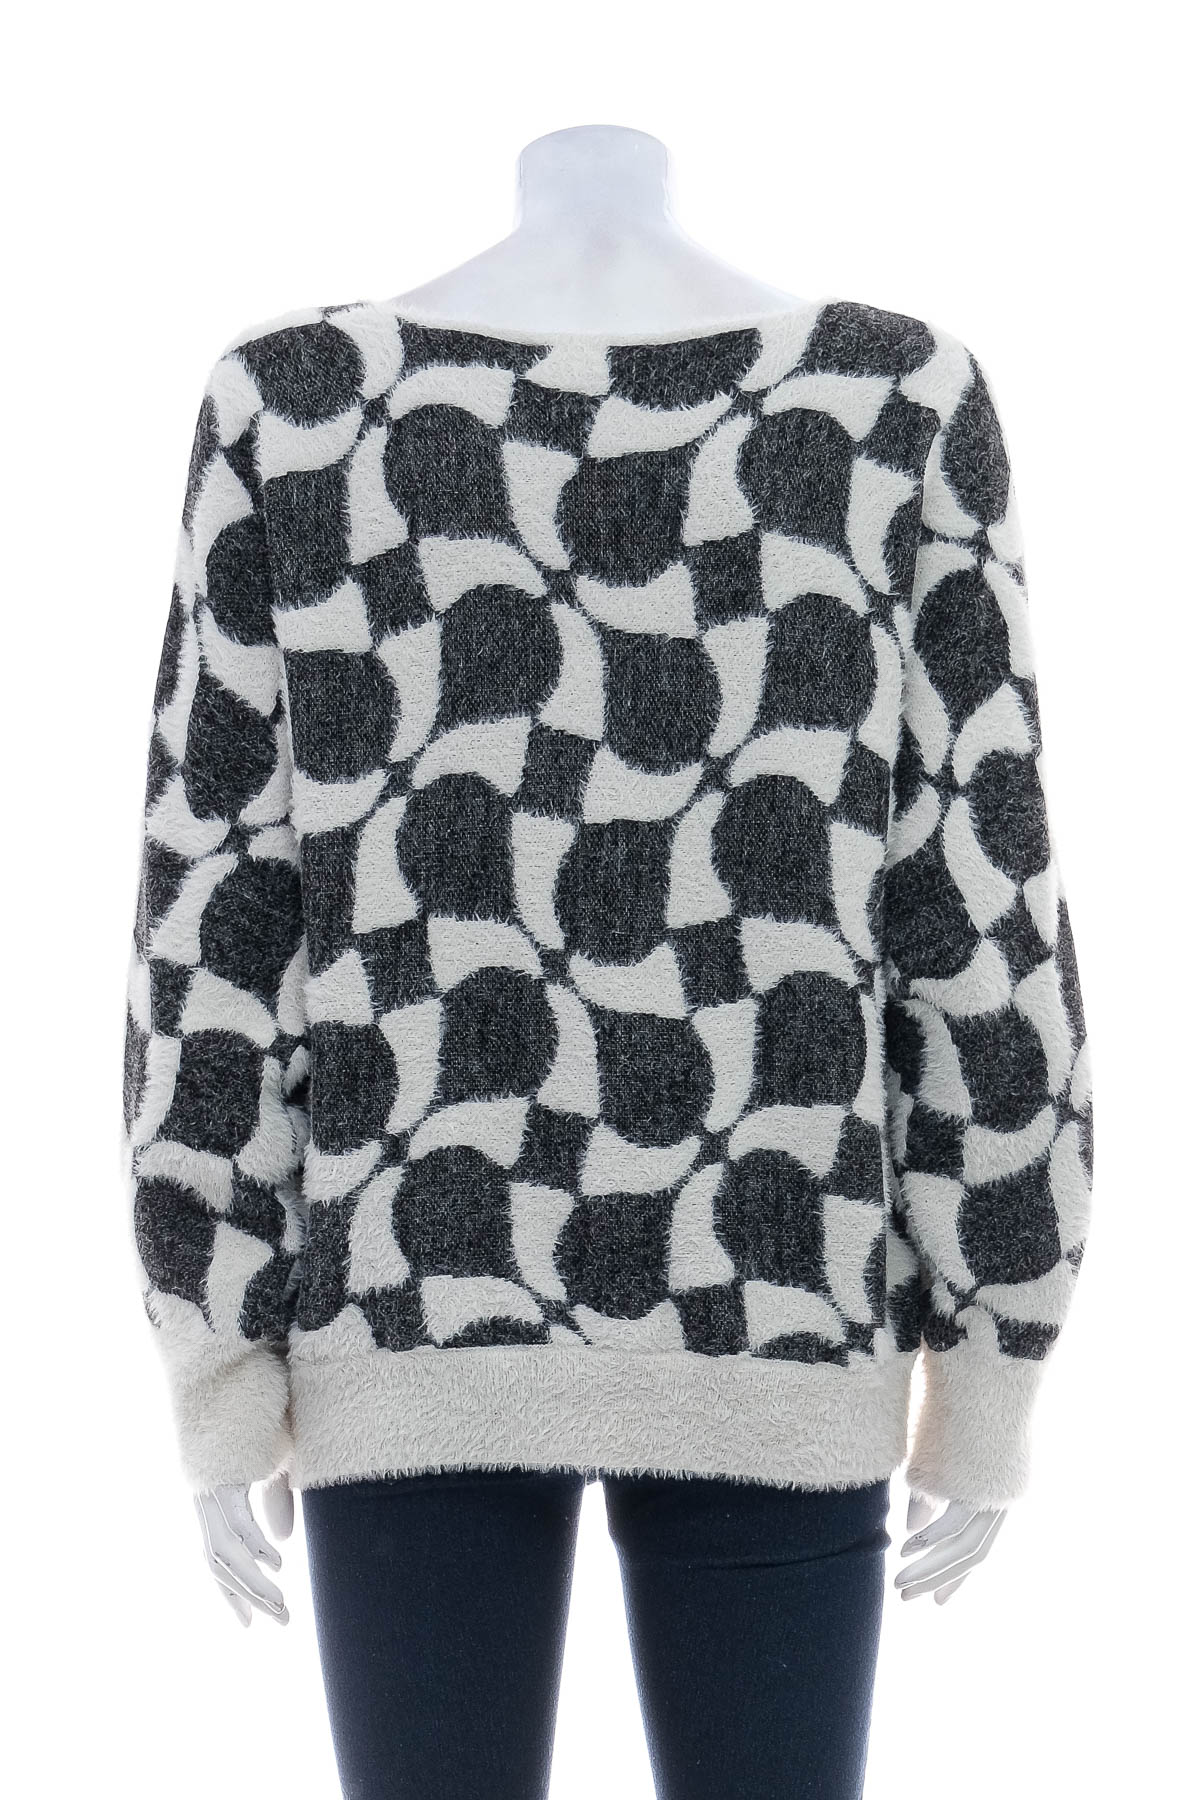 Women's sweater - Betty & Co - 1